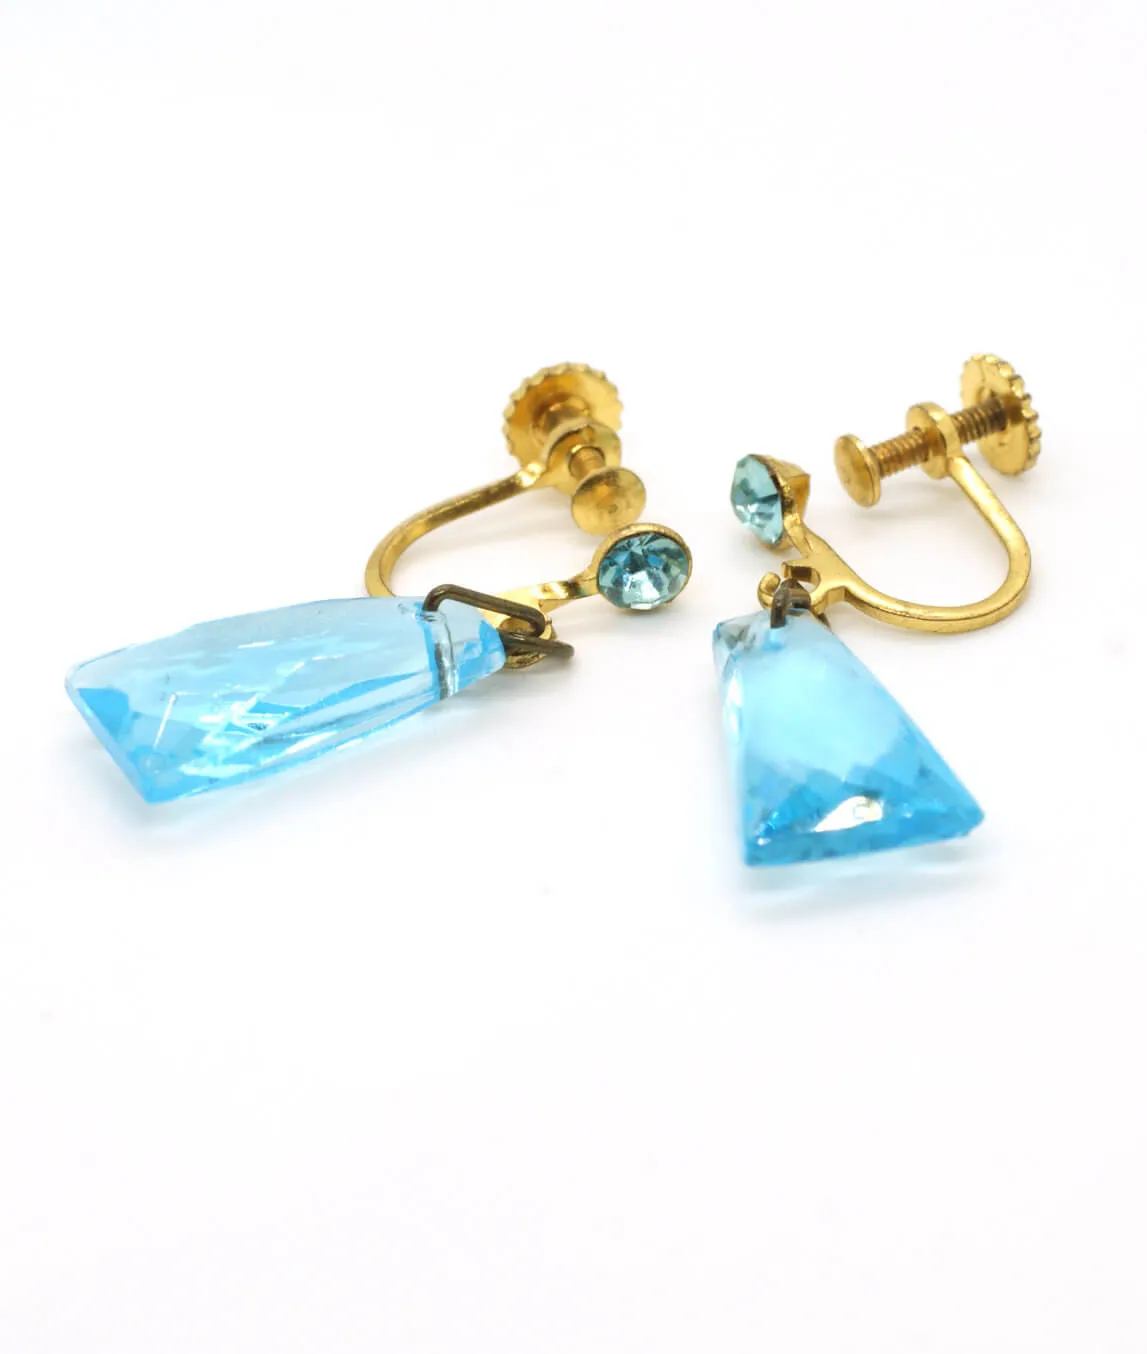 Vintage 1950s glass drop earrings